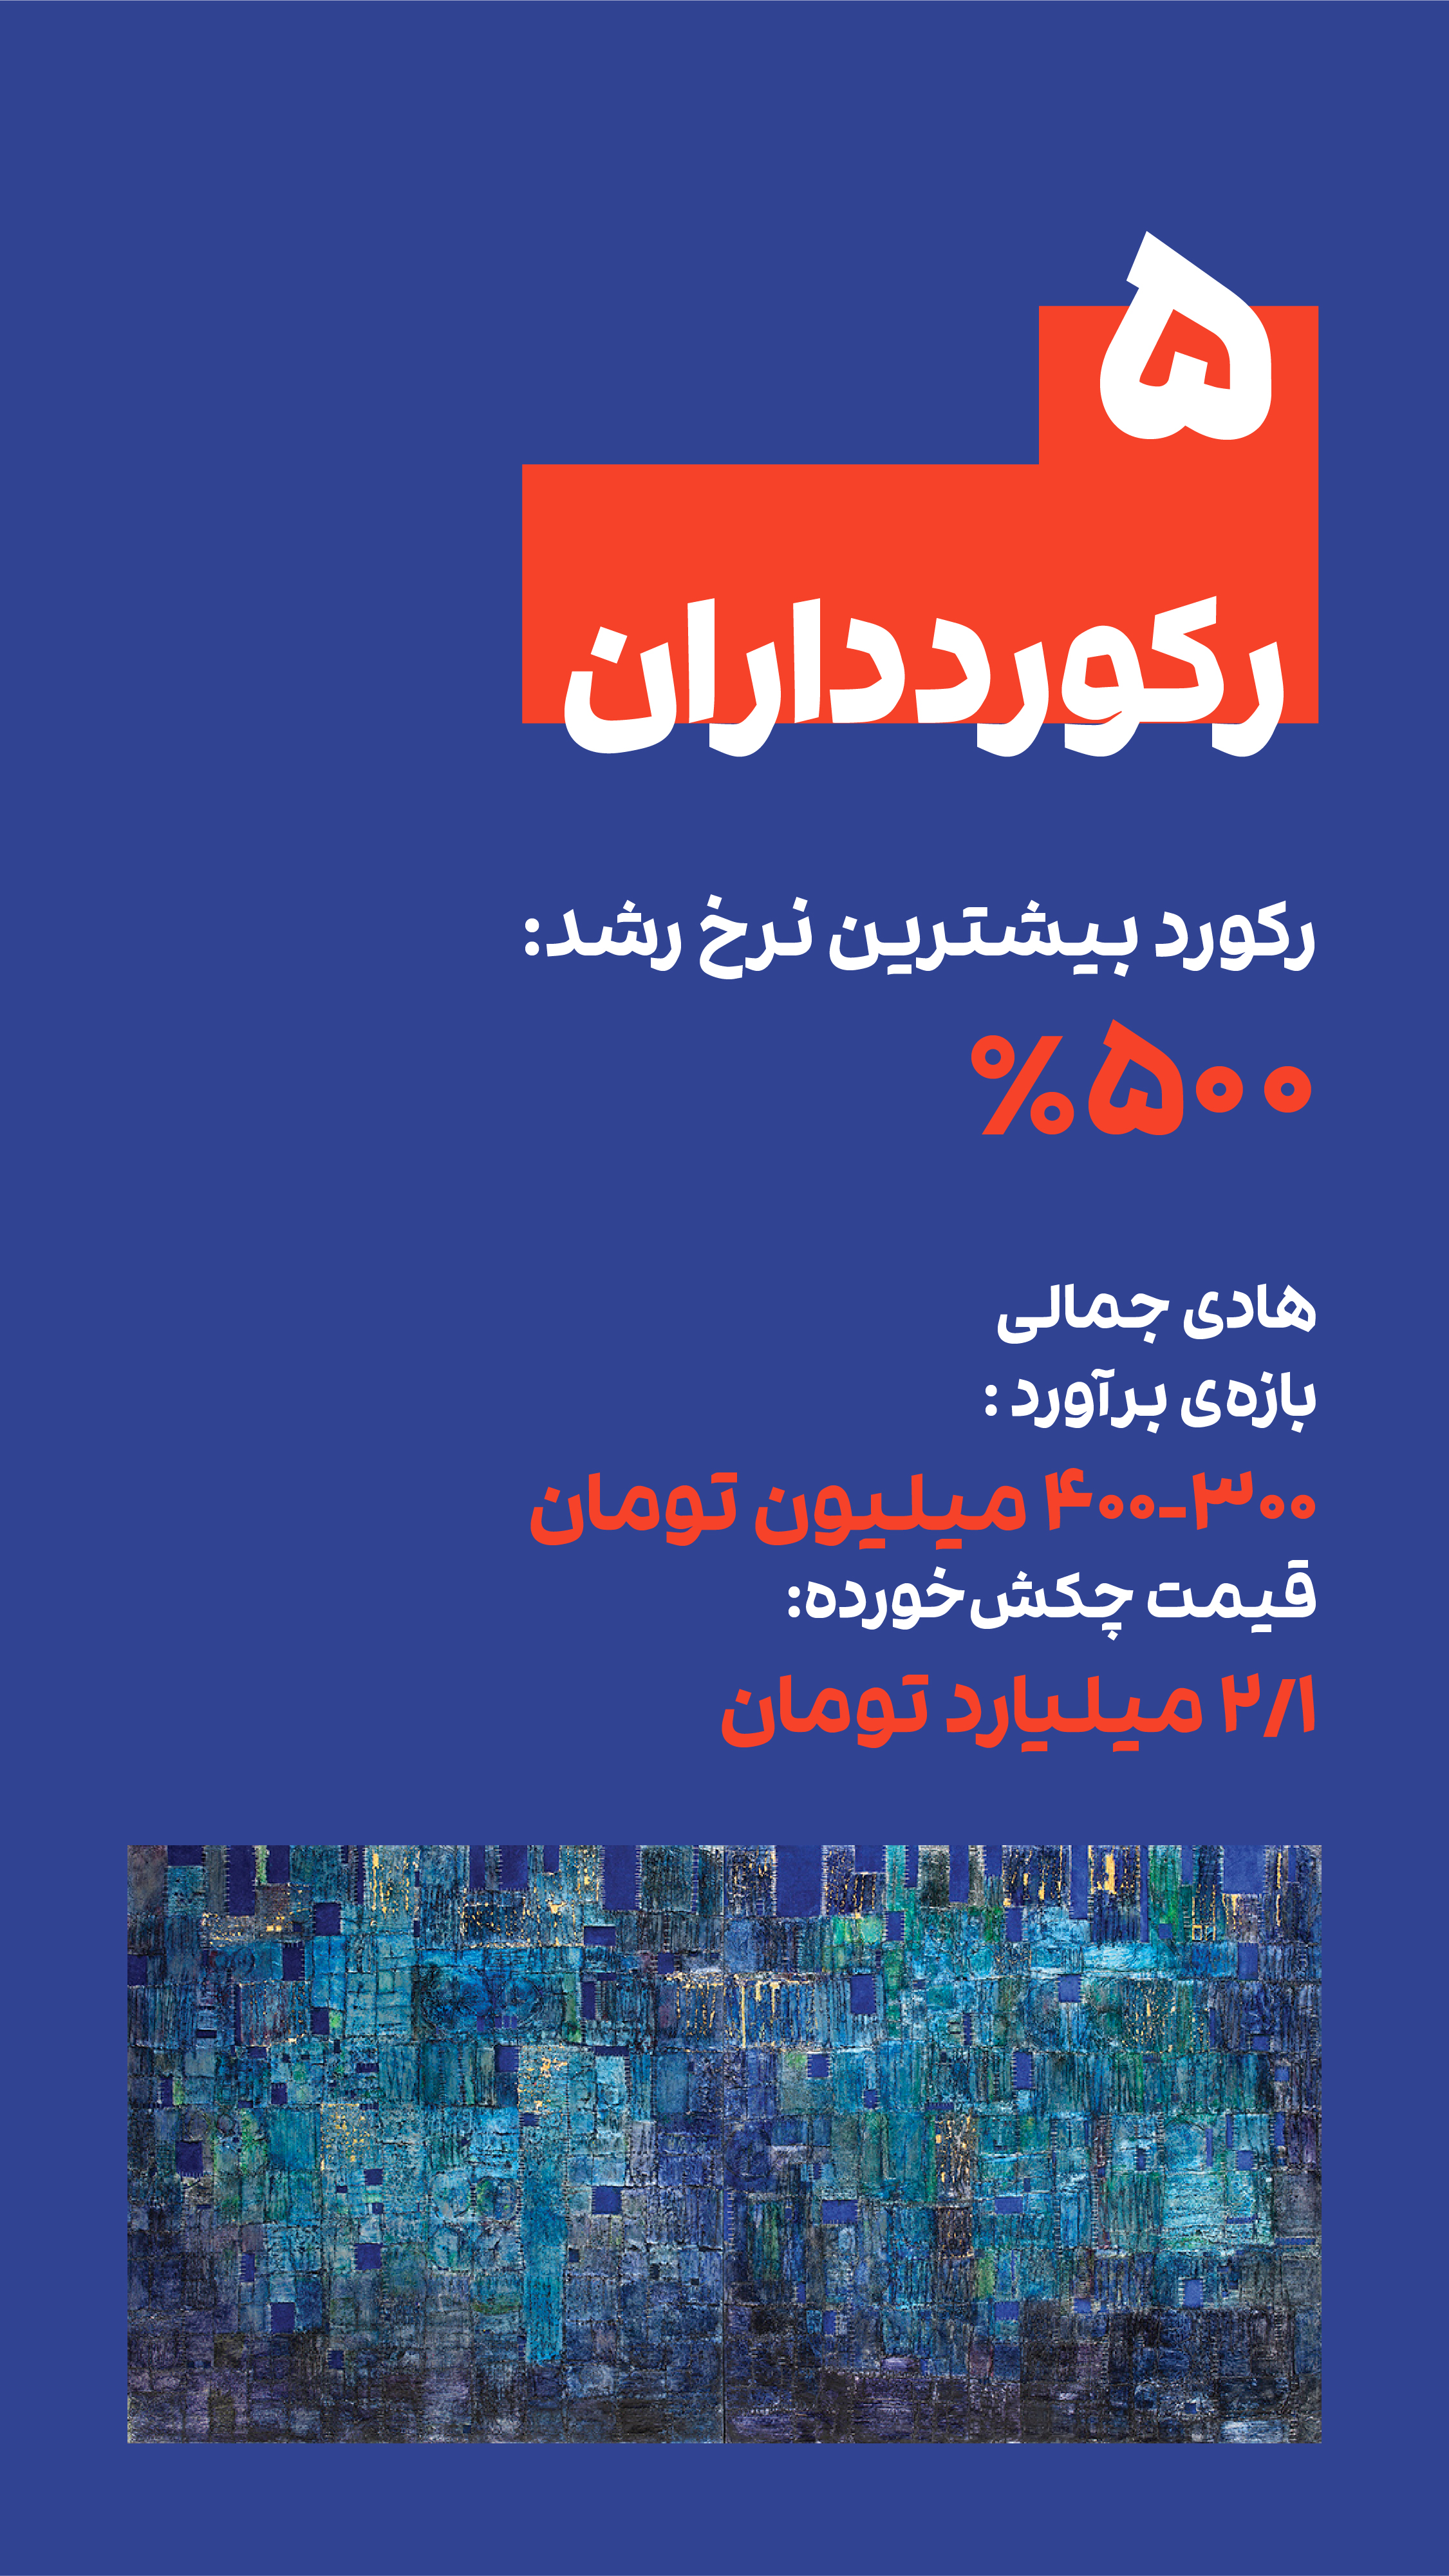 بیشترین نرخ رشد در حراج تهران